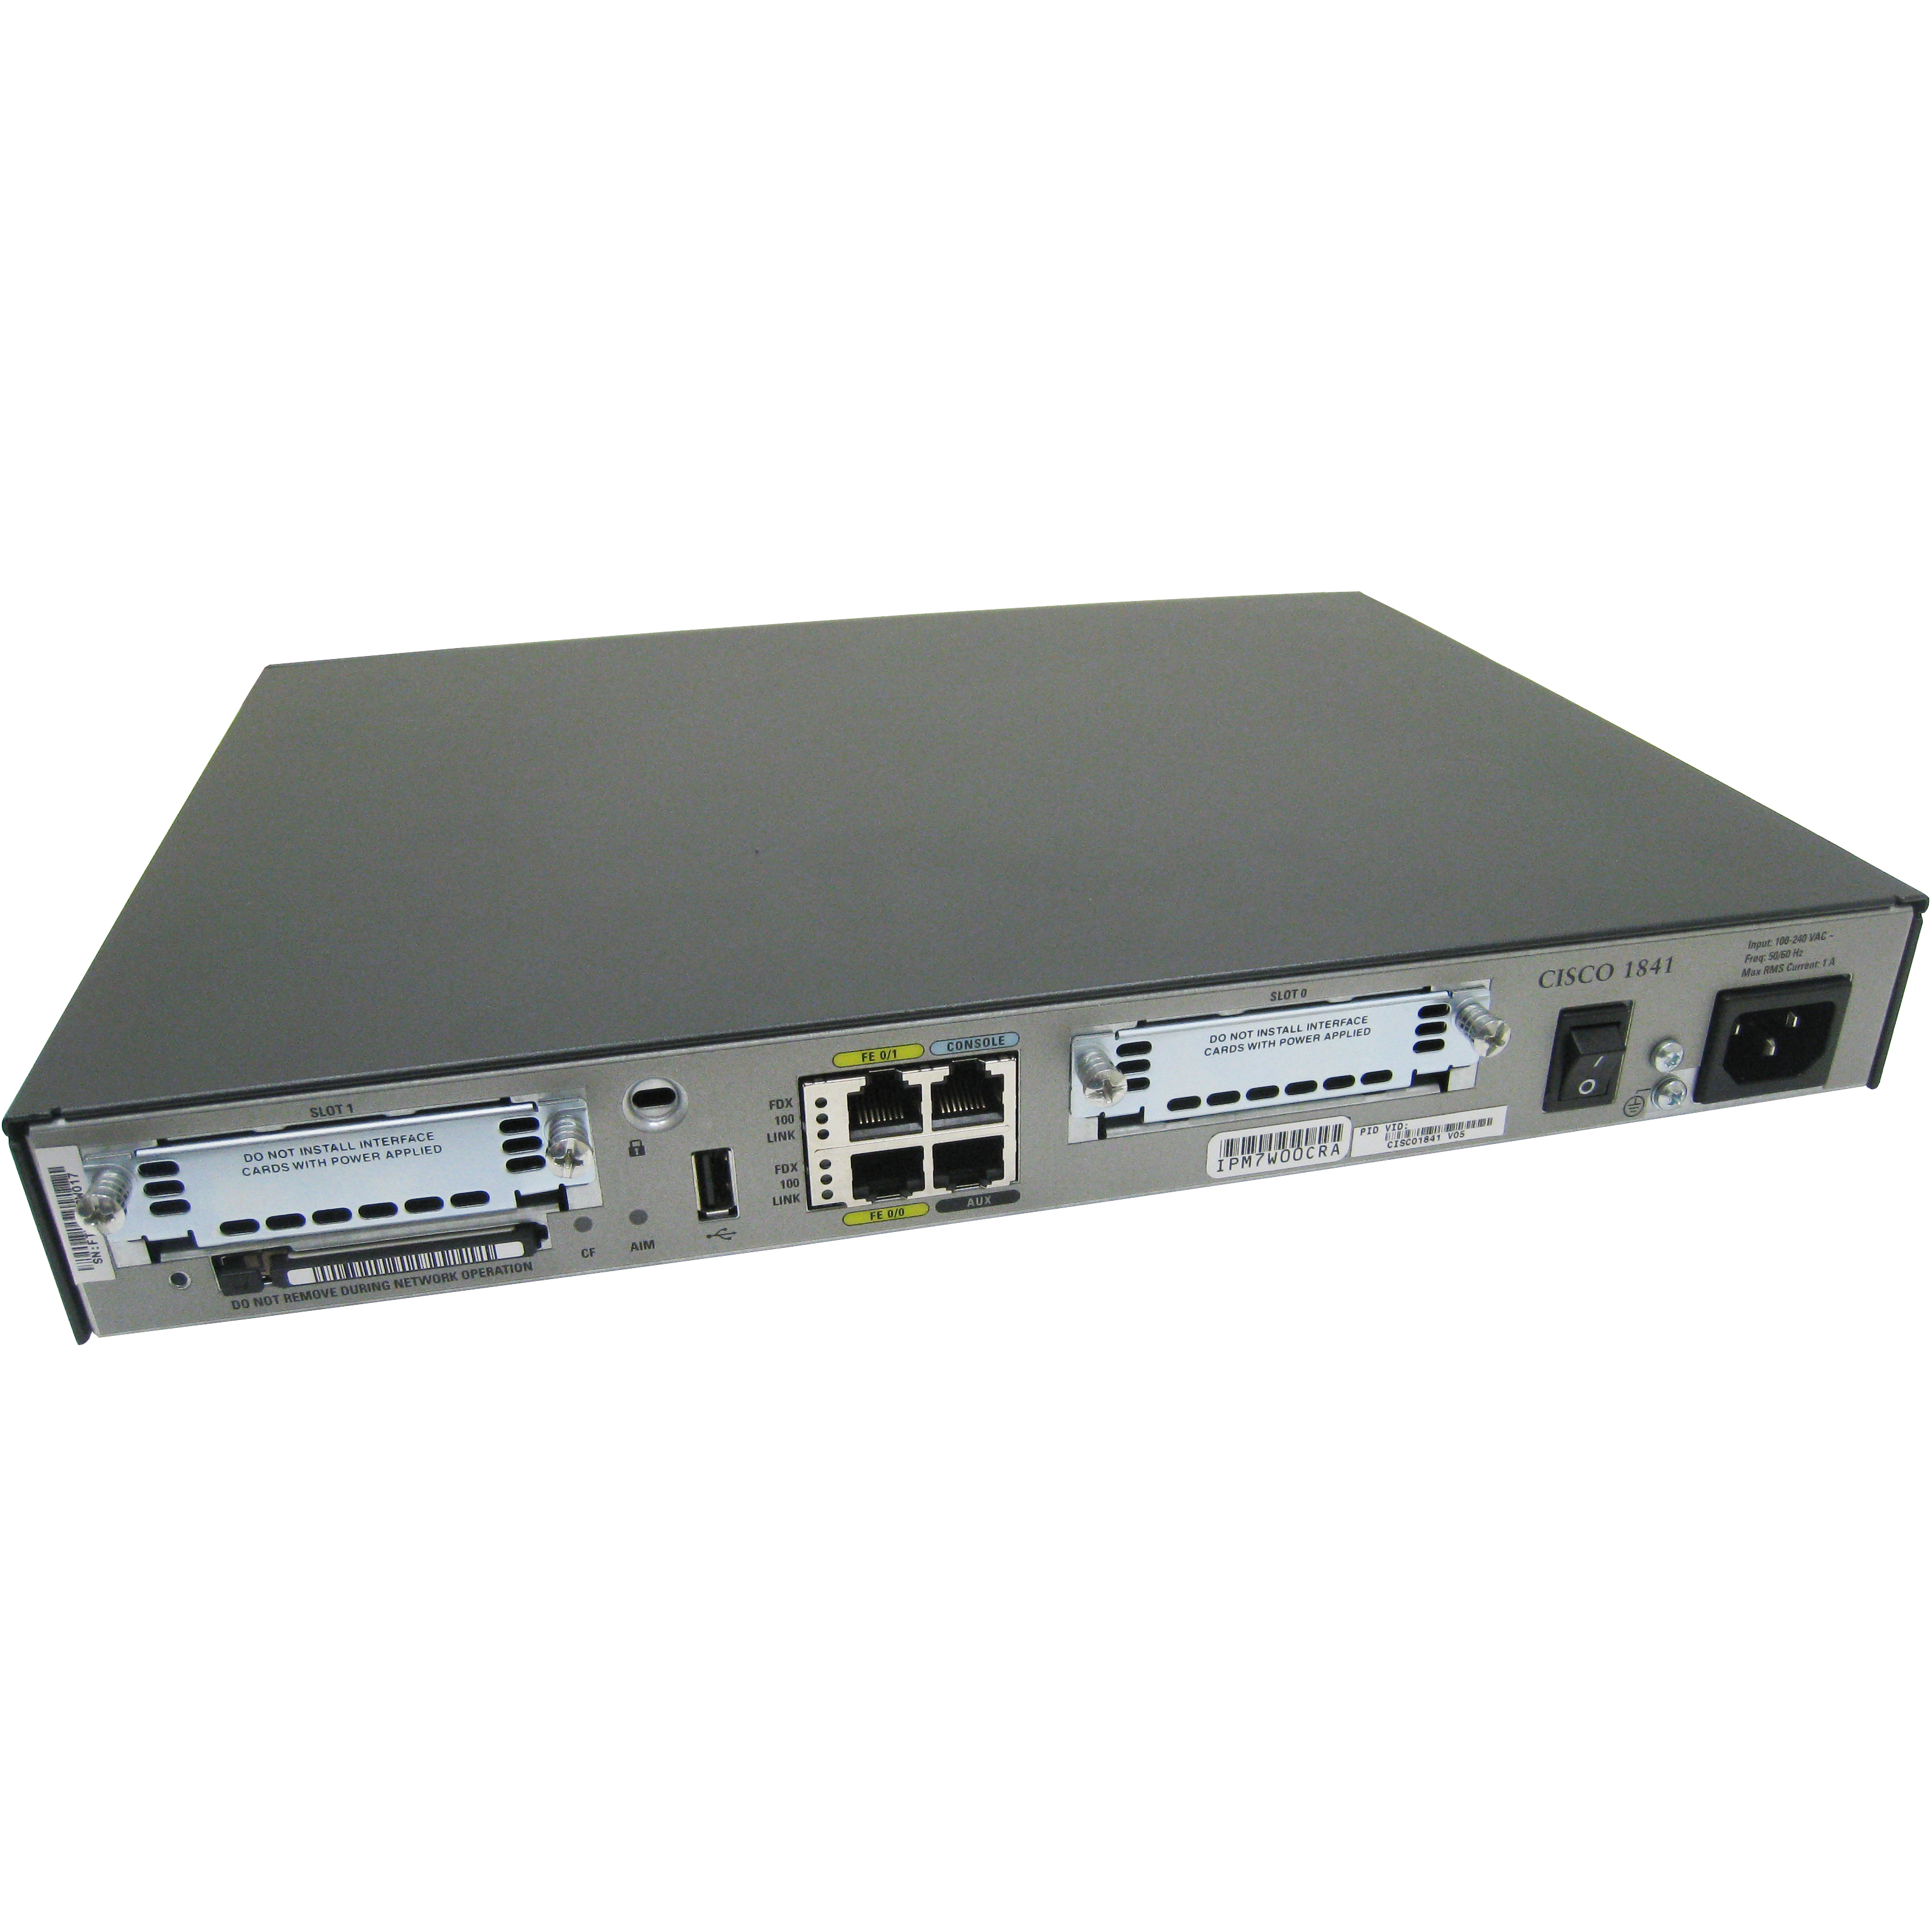 Cisco C1841-3G-V